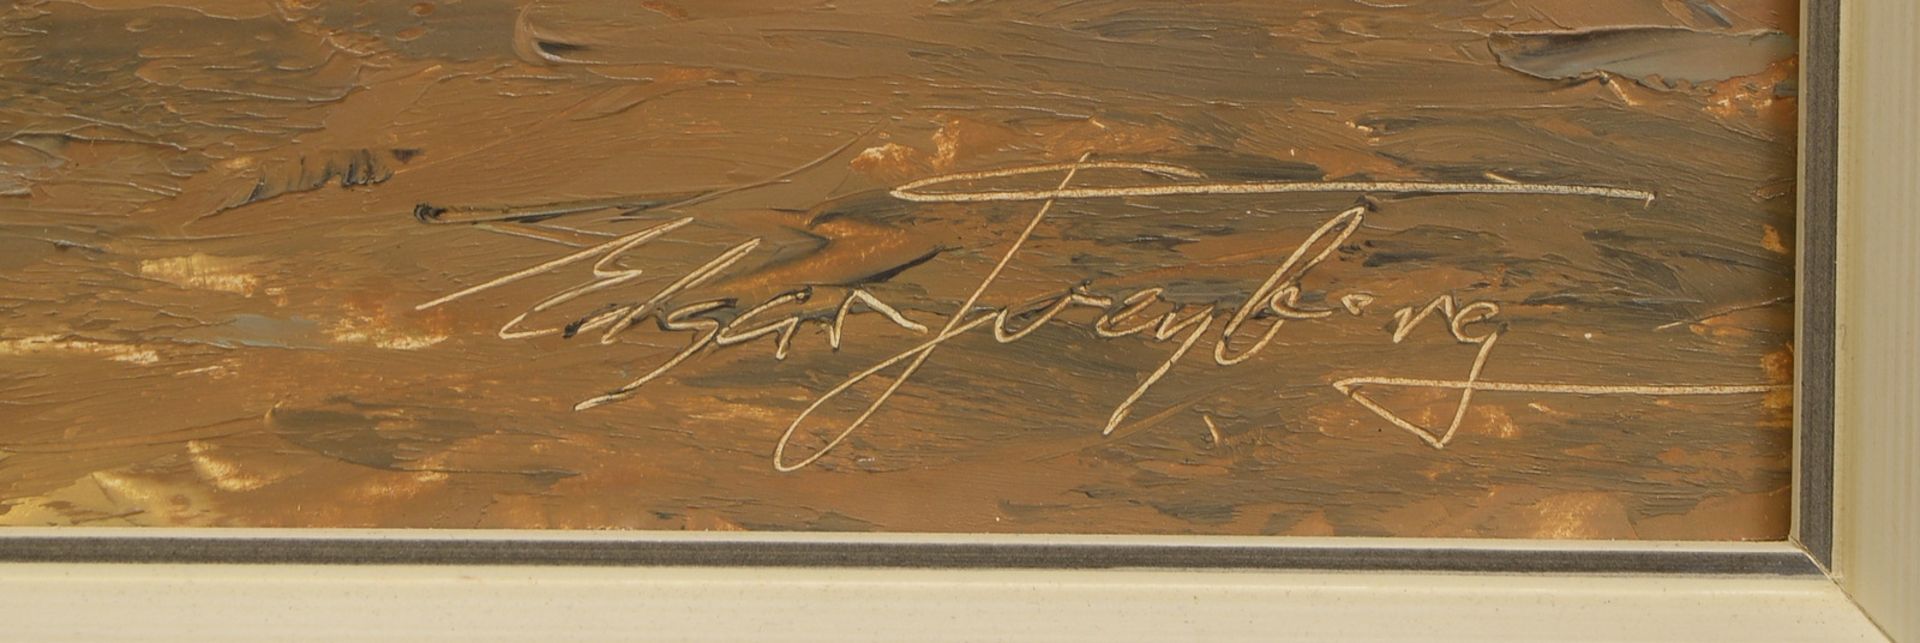 Freyberg, Edgar, 'Fischerboote am Siel', Öl/Platte, sign.; Rahmenmaße 63,5 x 88,5 cm - Bild 2 aus 2